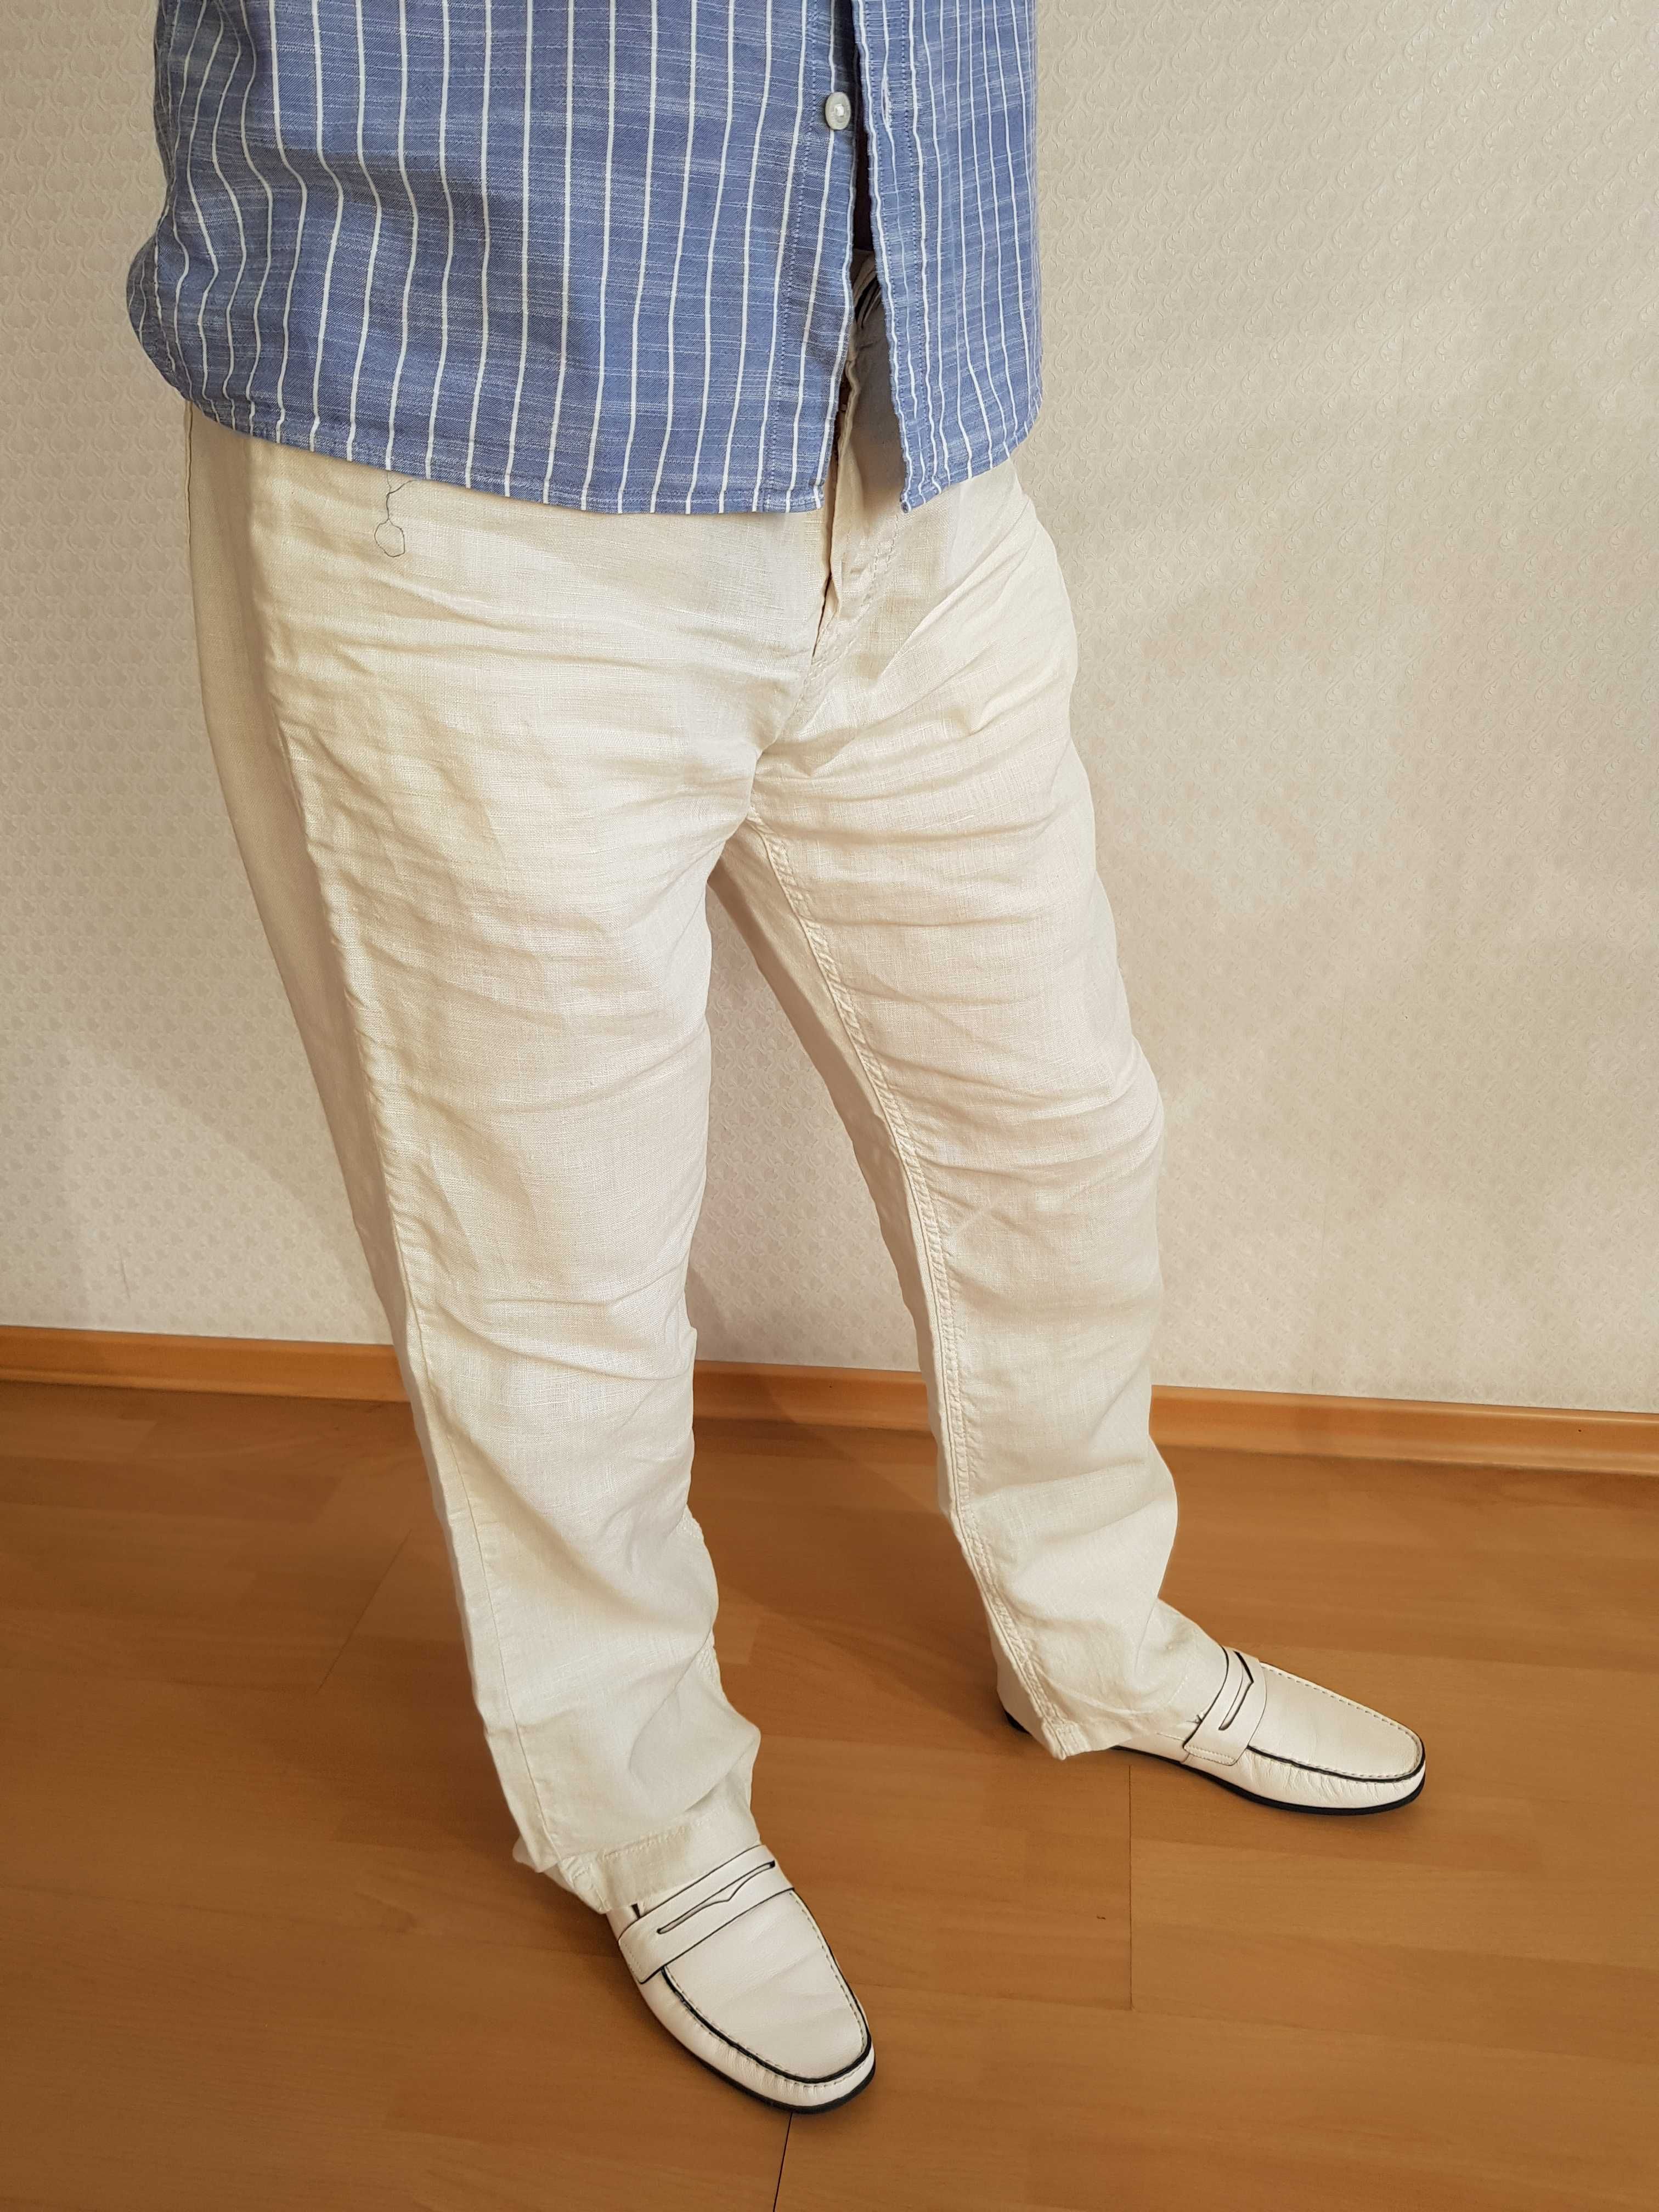 Мужские льняные брюки на лето MADOC Jeans